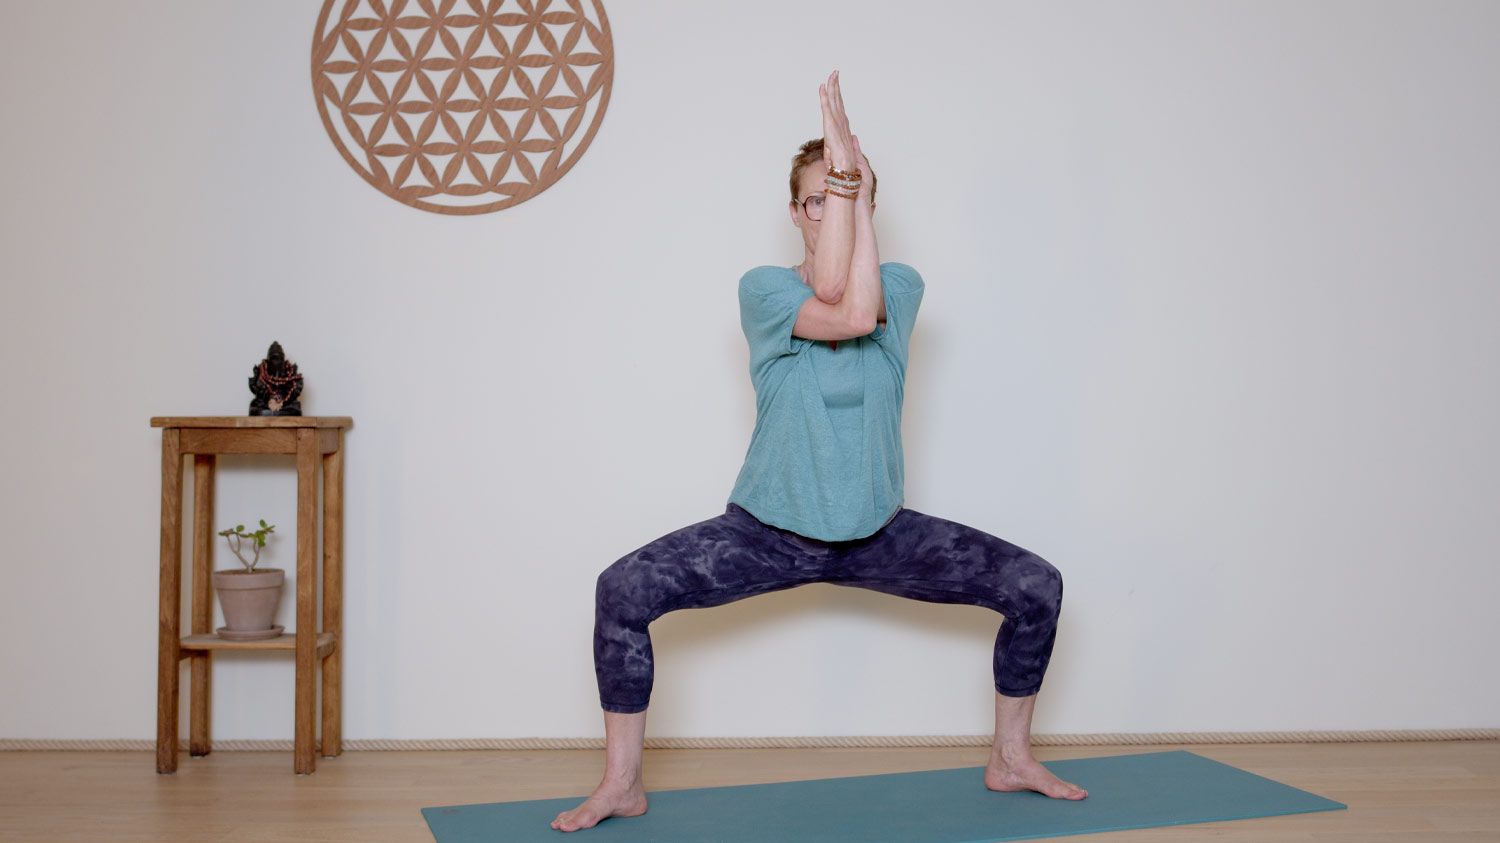 Replay du vendredi 15 septembre | Cours de yoga en ligne avec Delphine Denis | Hatha Yoga dynamique, Méditation, Pranayama